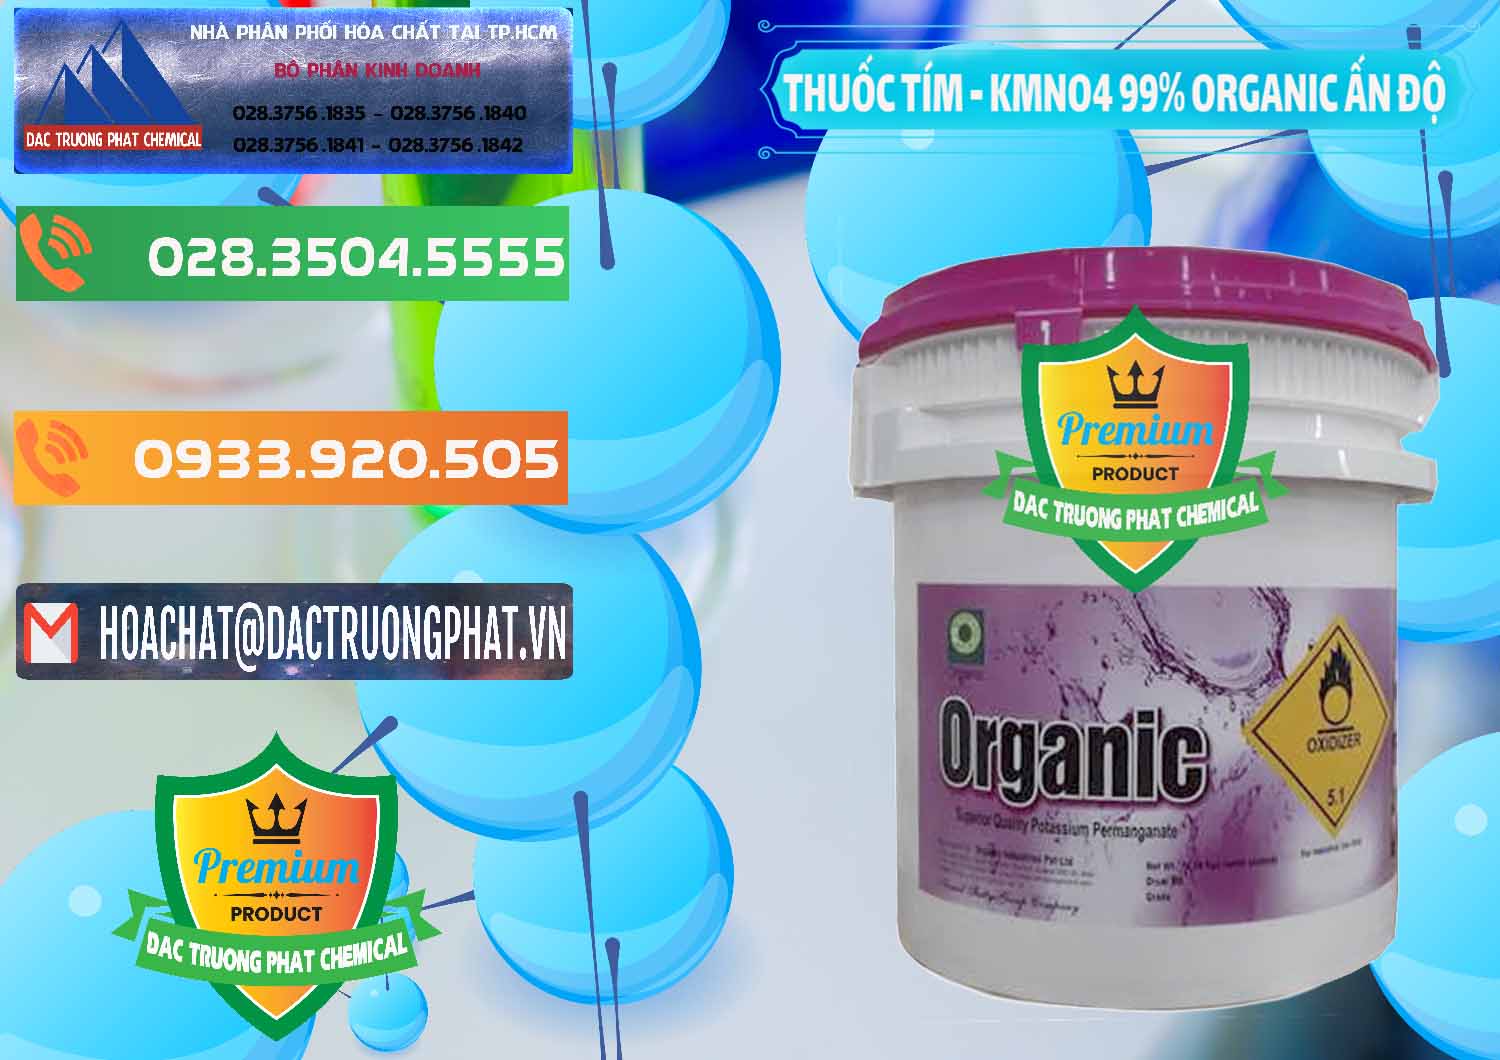 Công ty chuyên bán và cung cấp Thuốc Tím - KMNO4 99% Organic Ấn Độ India - 0216 - Đơn vị chuyên bán - cung cấp hóa chất tại TP.HCM - hoachatxulynuoc.com.vn